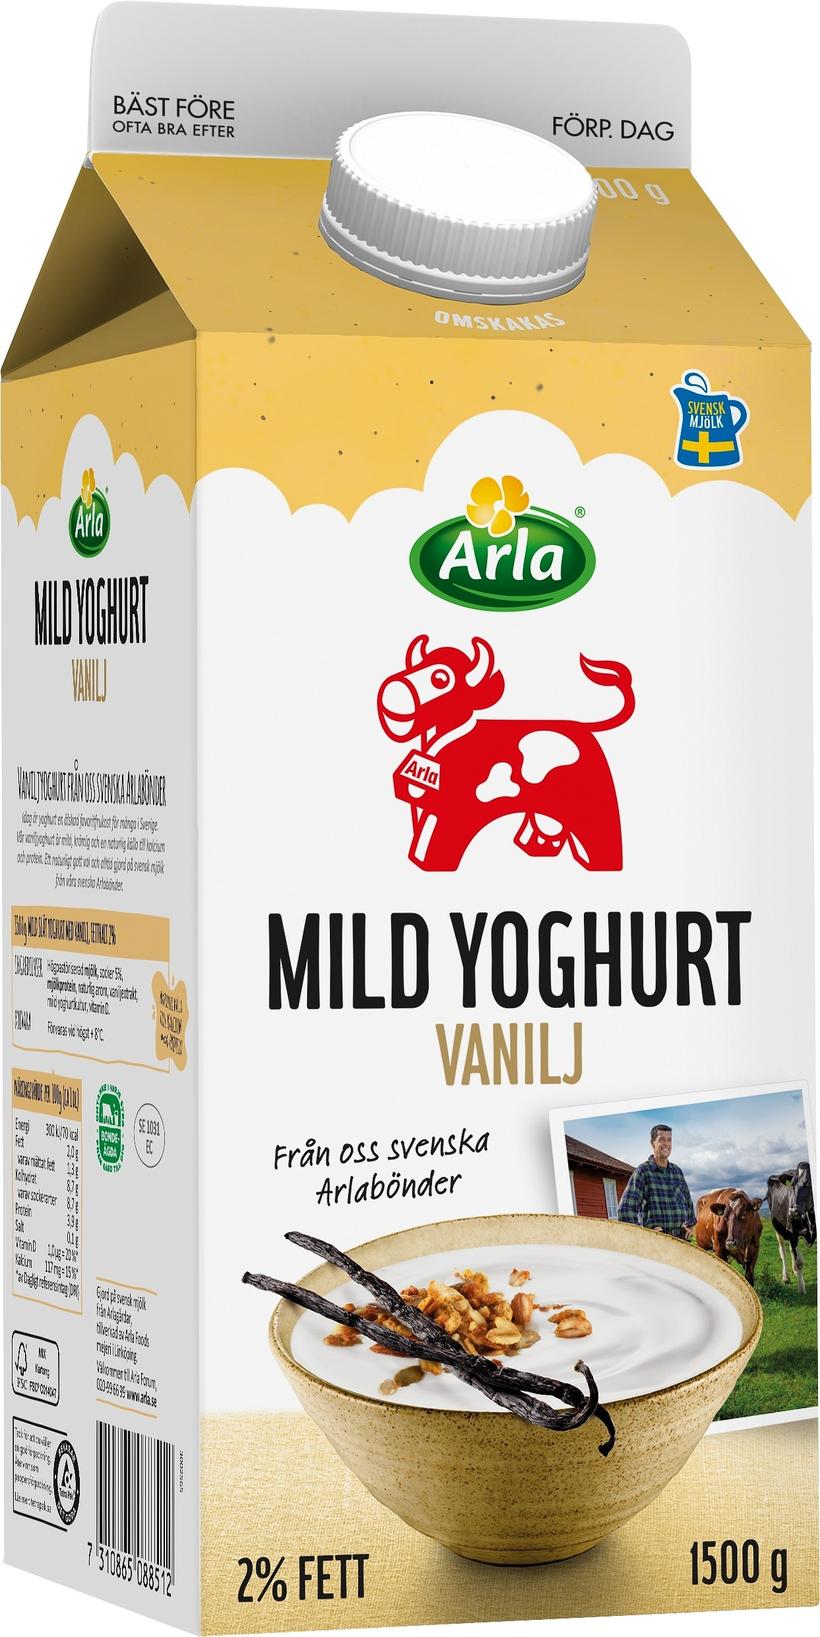 Mild Yoghurt Vanilj för 31,5 kr på Coop